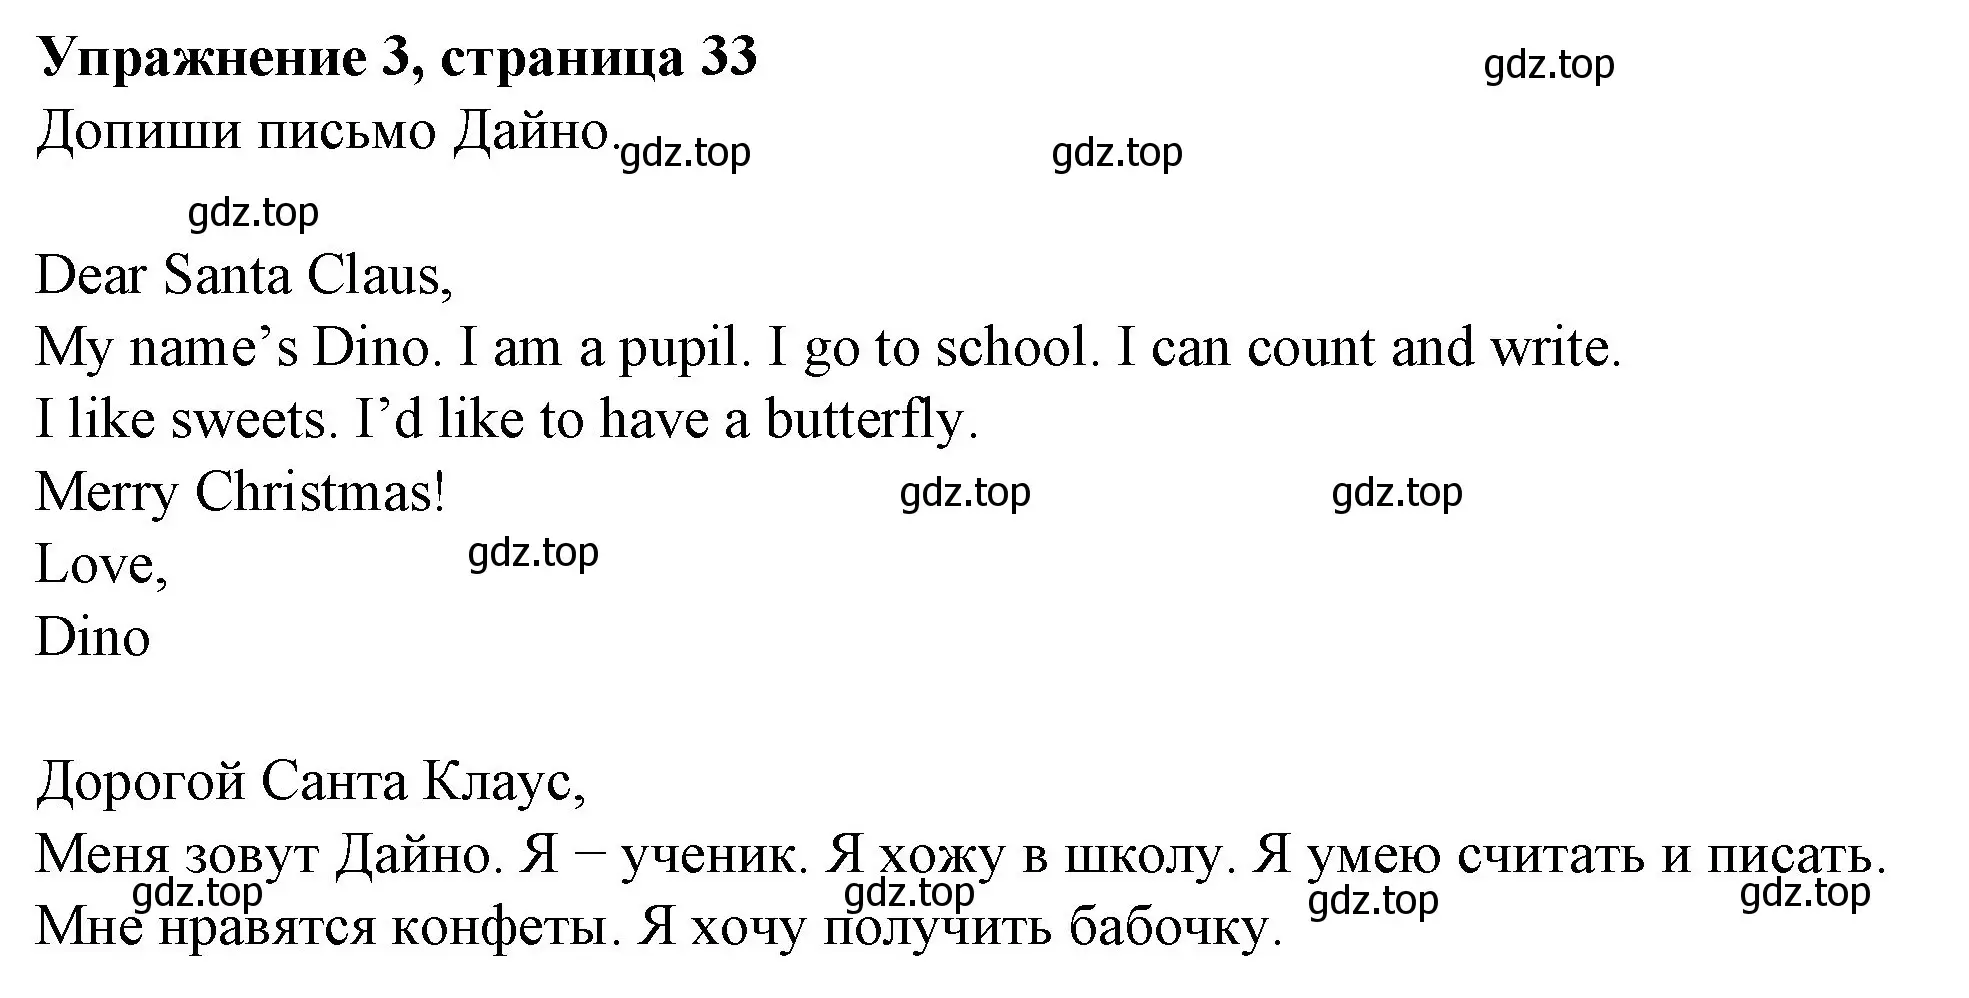 Решение номер 3 (страница 33) гдз по английскому языку 3 класс Биболетова, Денисенко, рабочая тетрадь